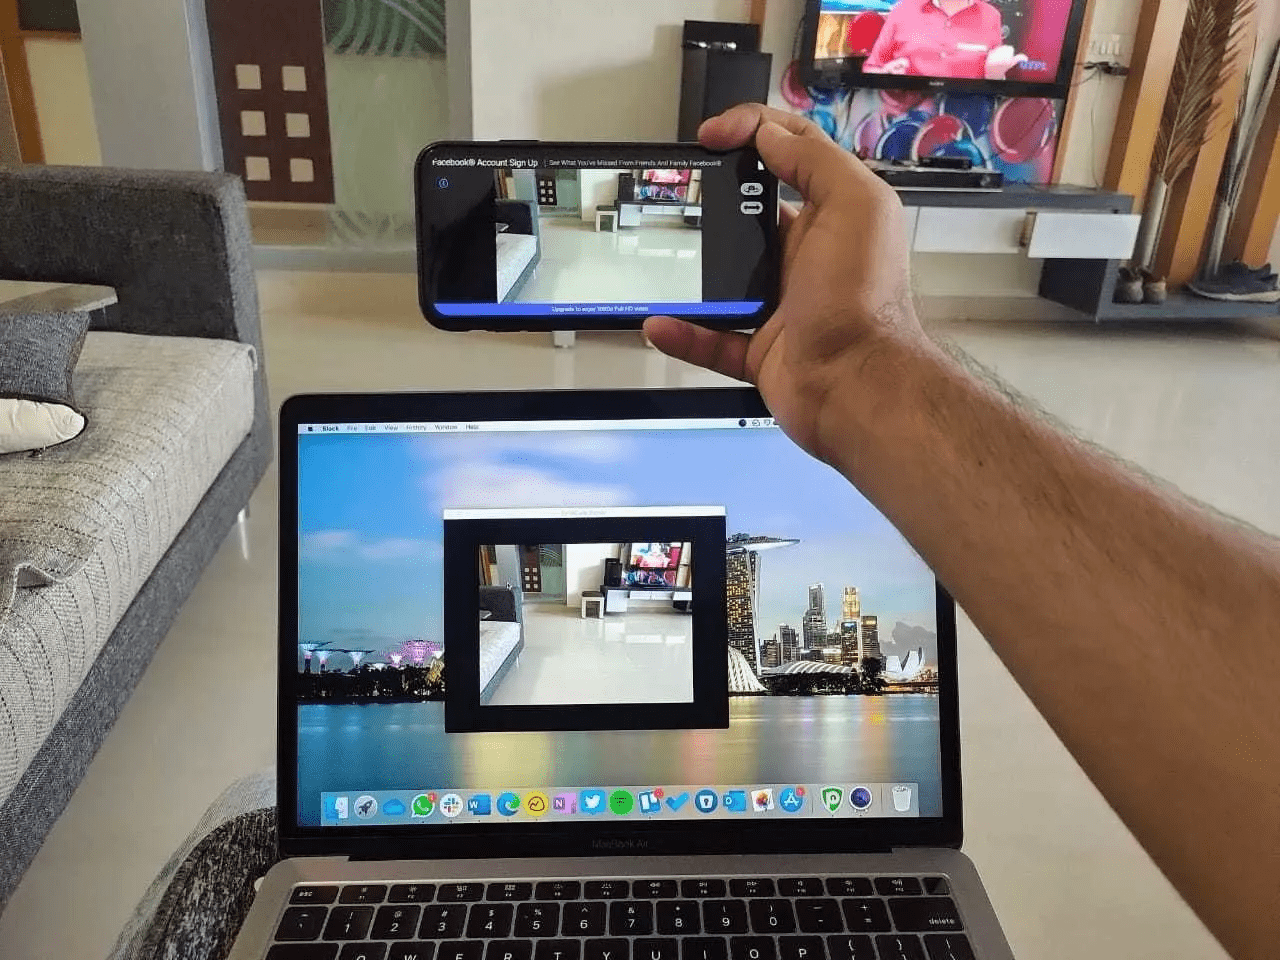 Phone as webcam